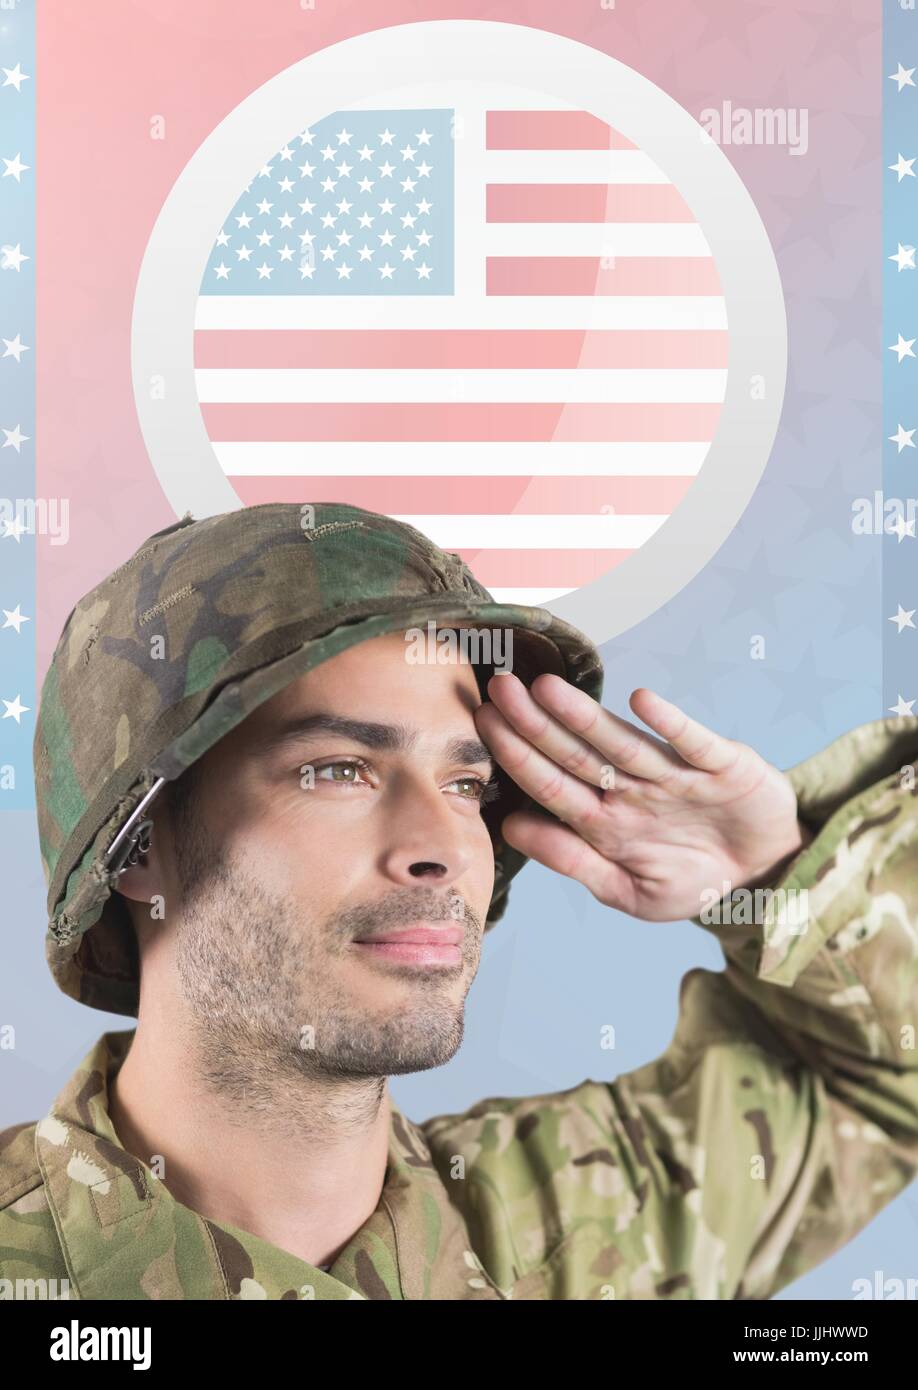 American soldier saluting contre drapeau américain Banque D'Images